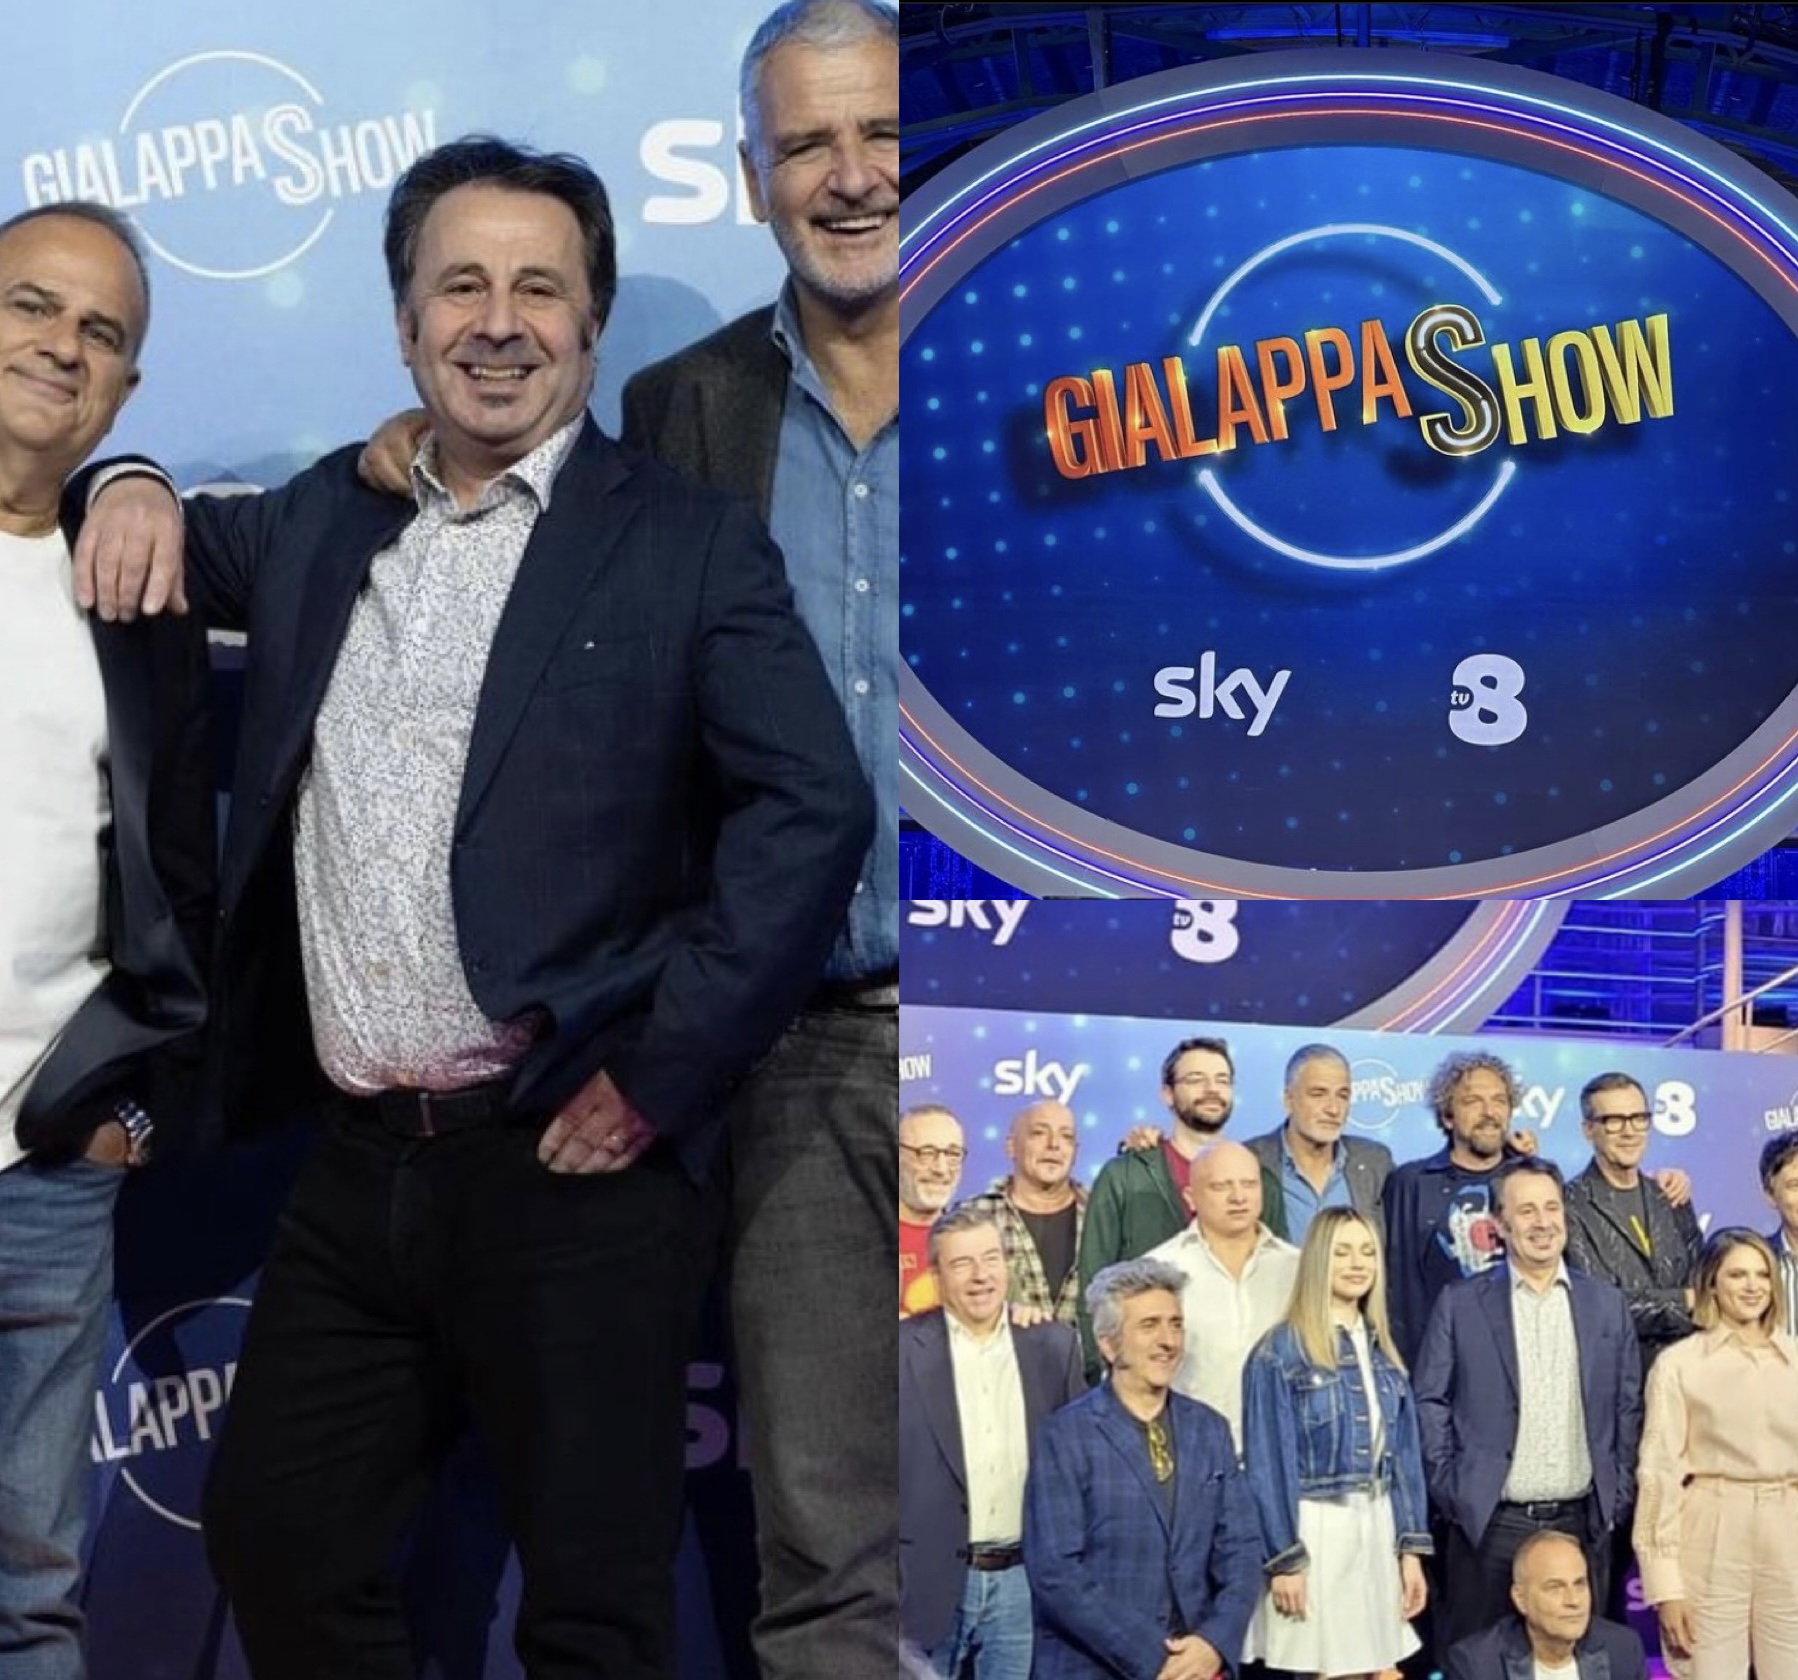 Gialappa's Show, parte questa sera la prima puntata su TV8. Mago Forest e Paola Di Benedetto i conduttori